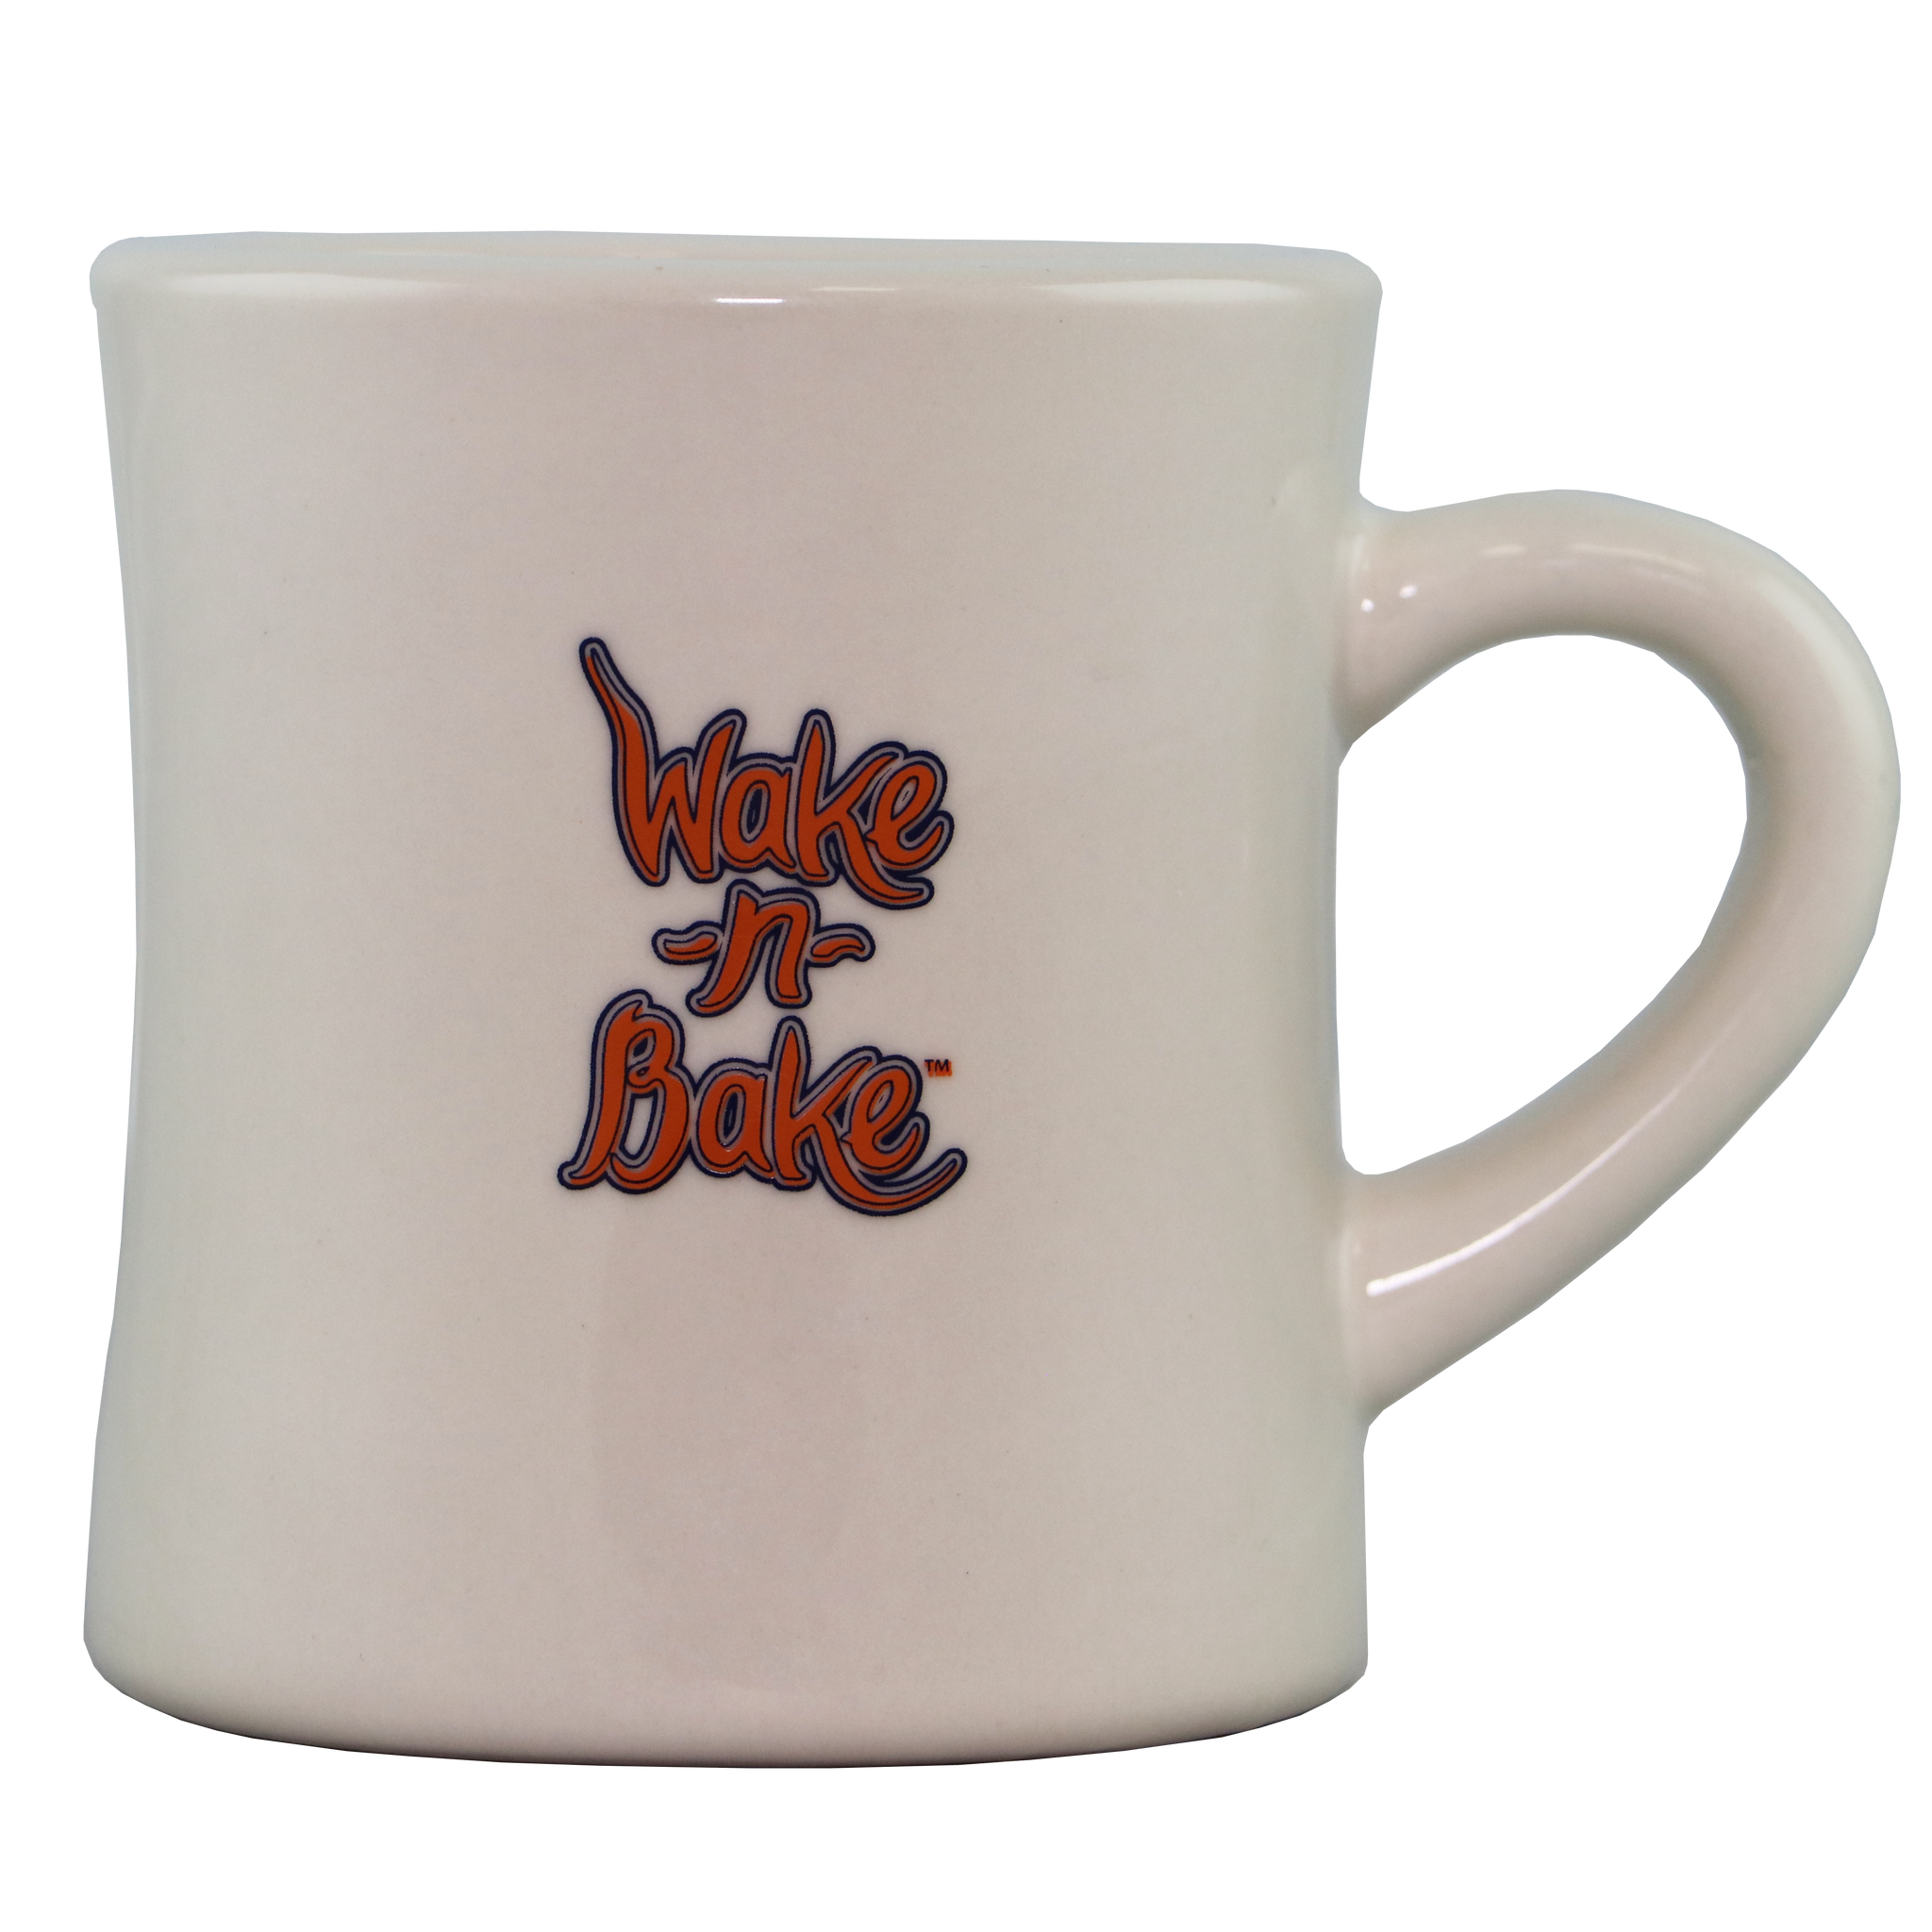 Wake-n-Bake Diner Mug